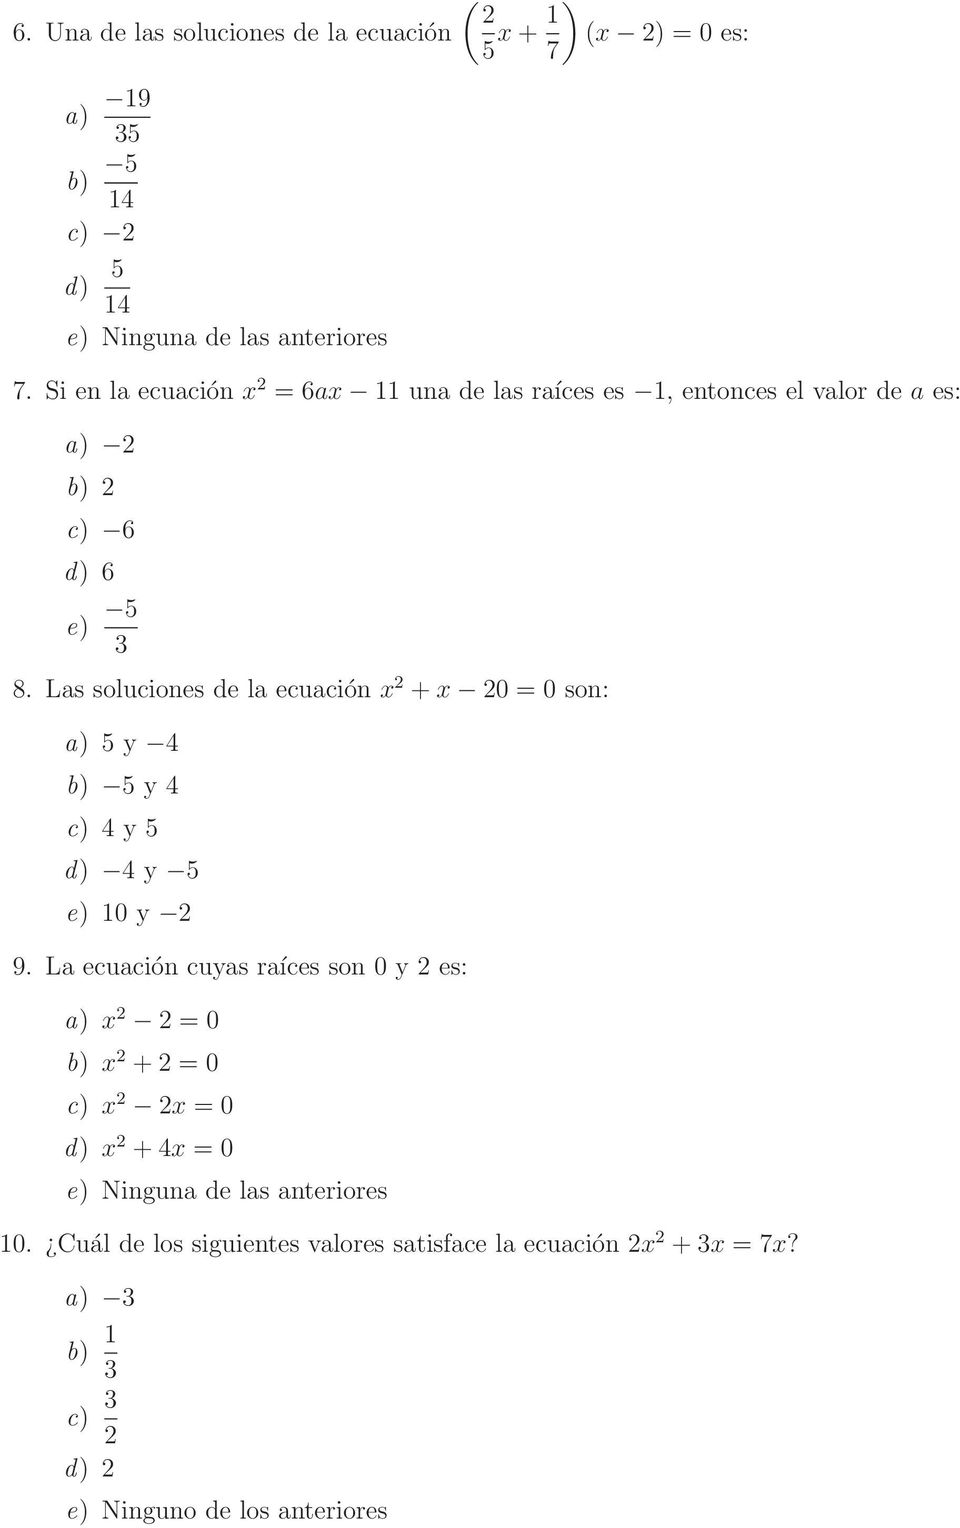 Las soluciones de la ecuación x +x 0 = 0 son: a) 5 y 4 b) 5 y 4 c) 4 y 5 d) 4 y 5 e) 10 y 9.